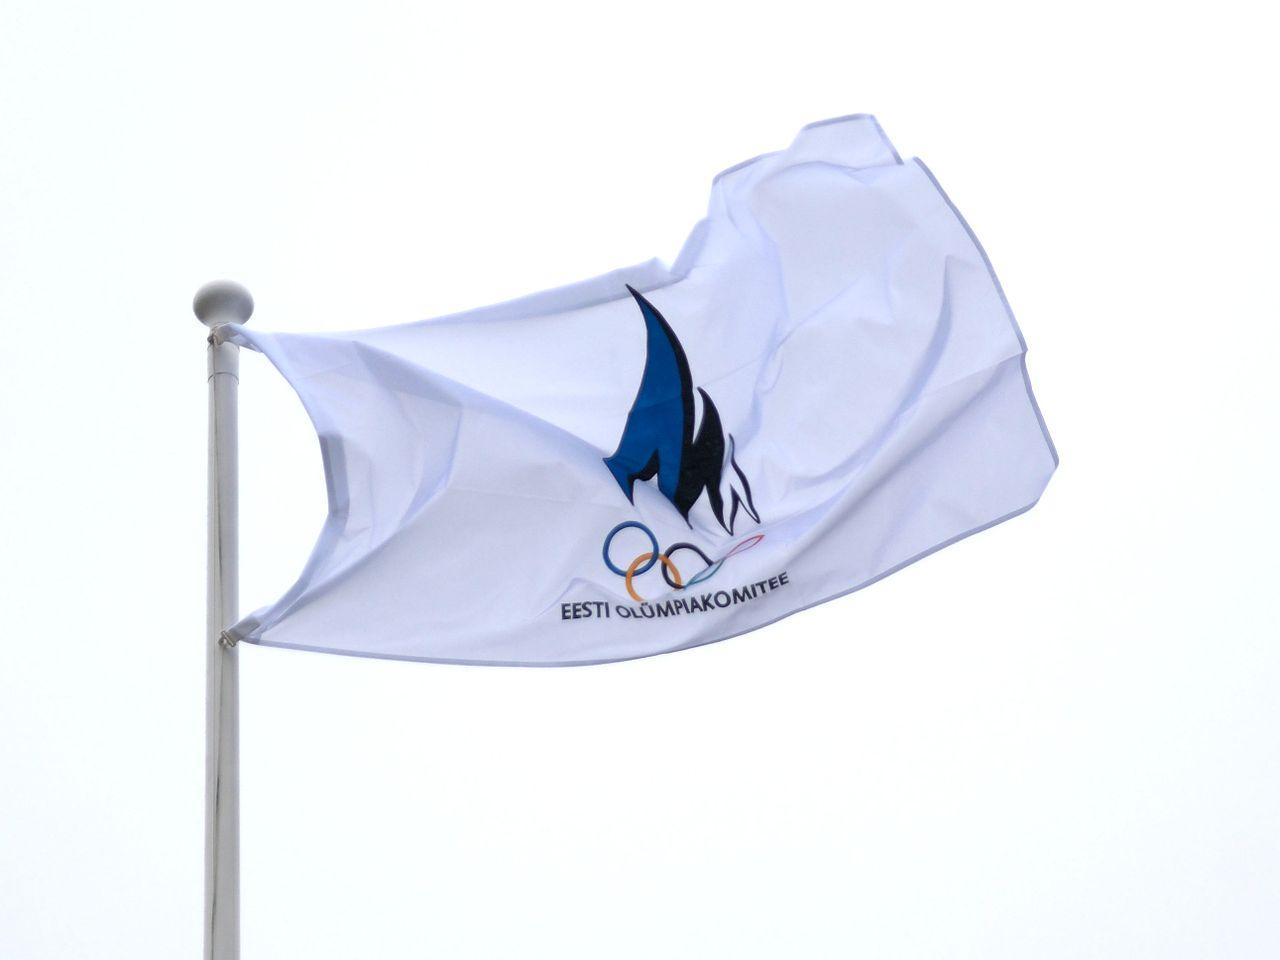 Olümpiakomitee lipp